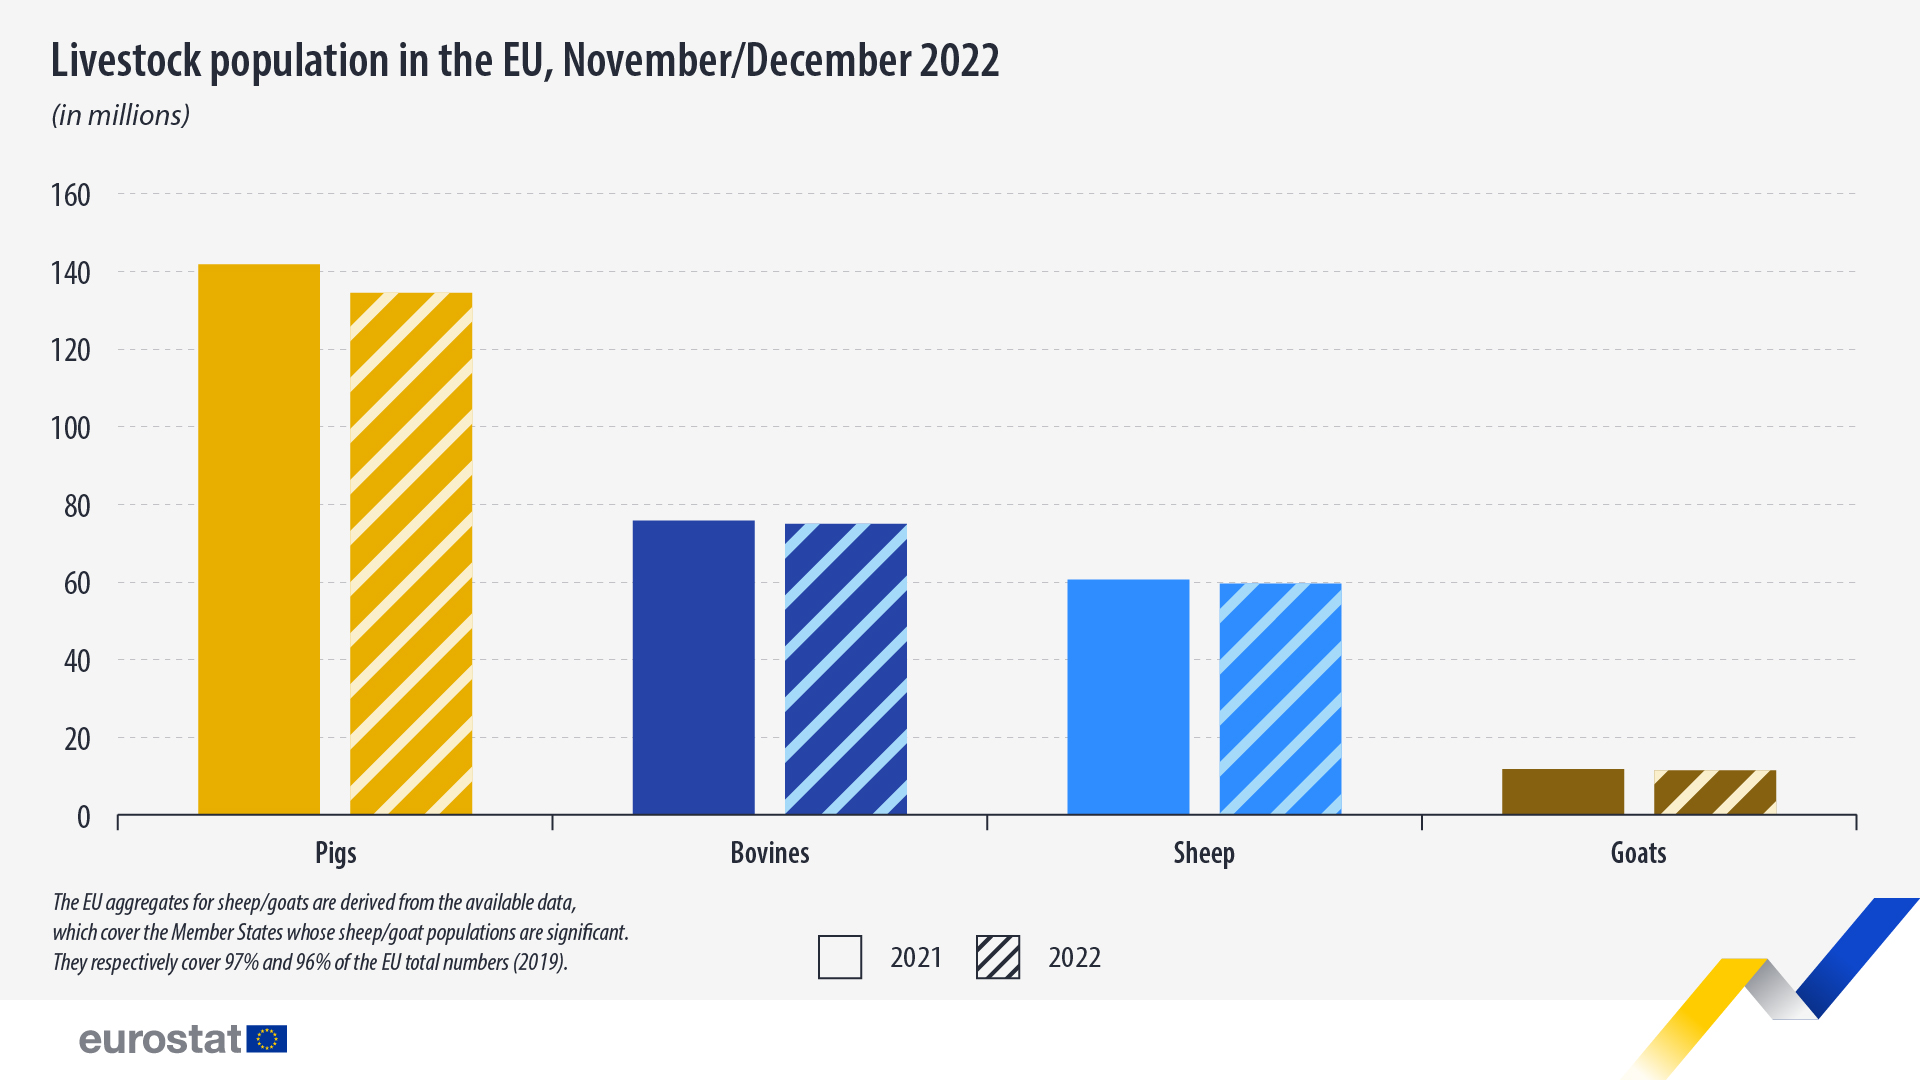 Γράφημα ράβδων: Πληθυσμός ζώων στην ΕΕ, Νοέμβριος/Δεκέμβριος 2021 και 2022, σε εκατομμύρια